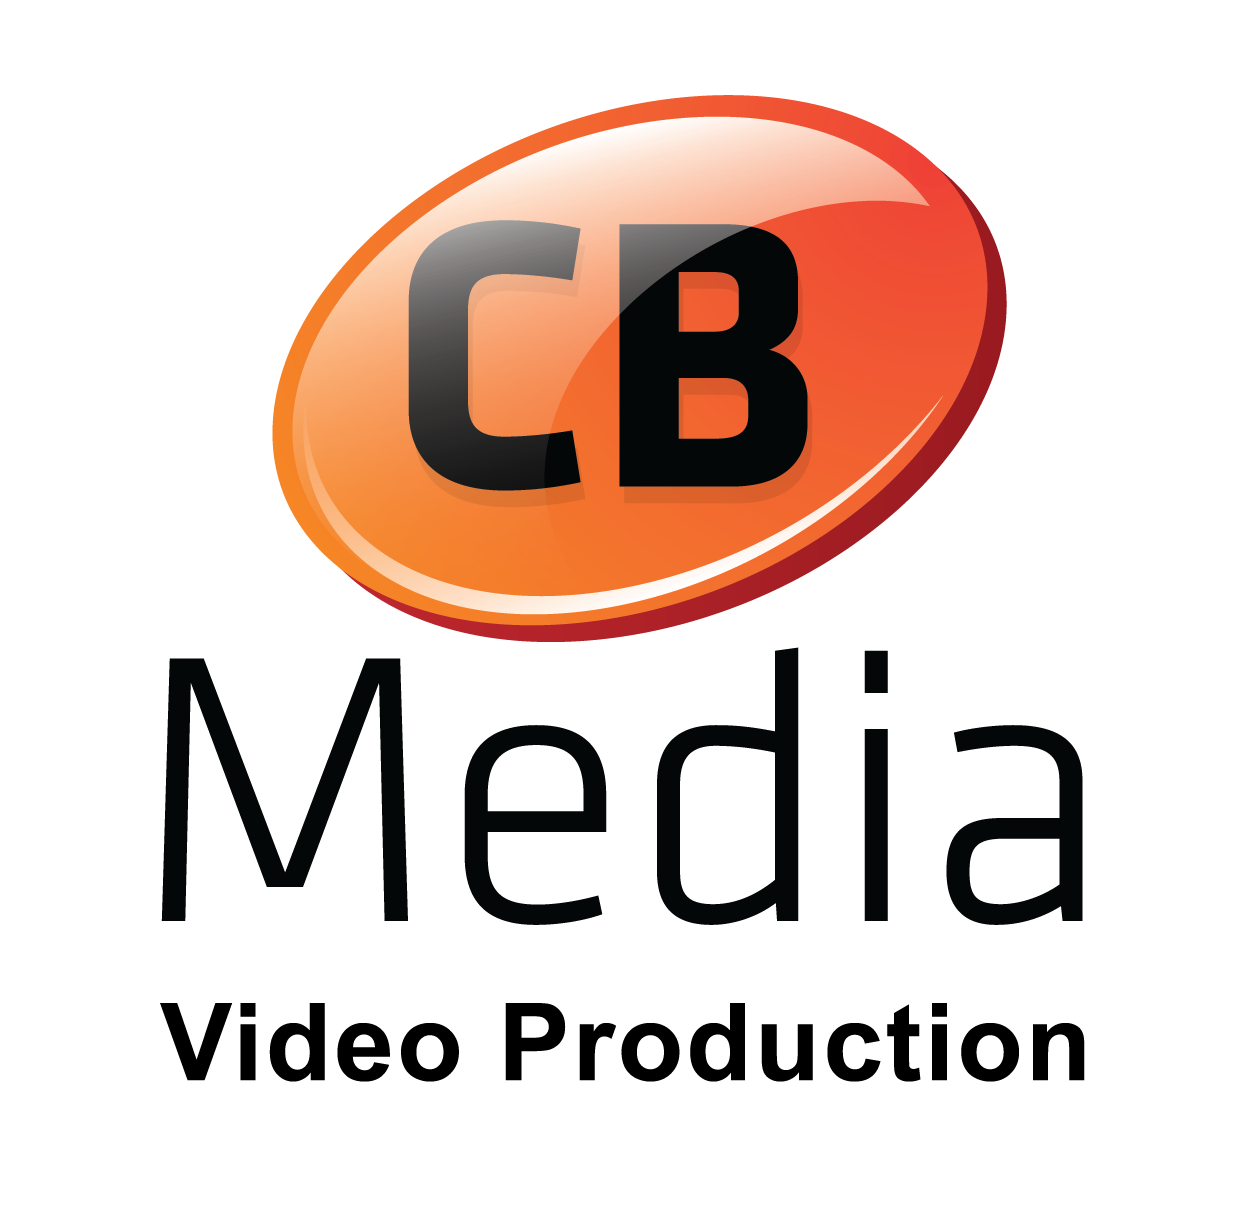 CB Media